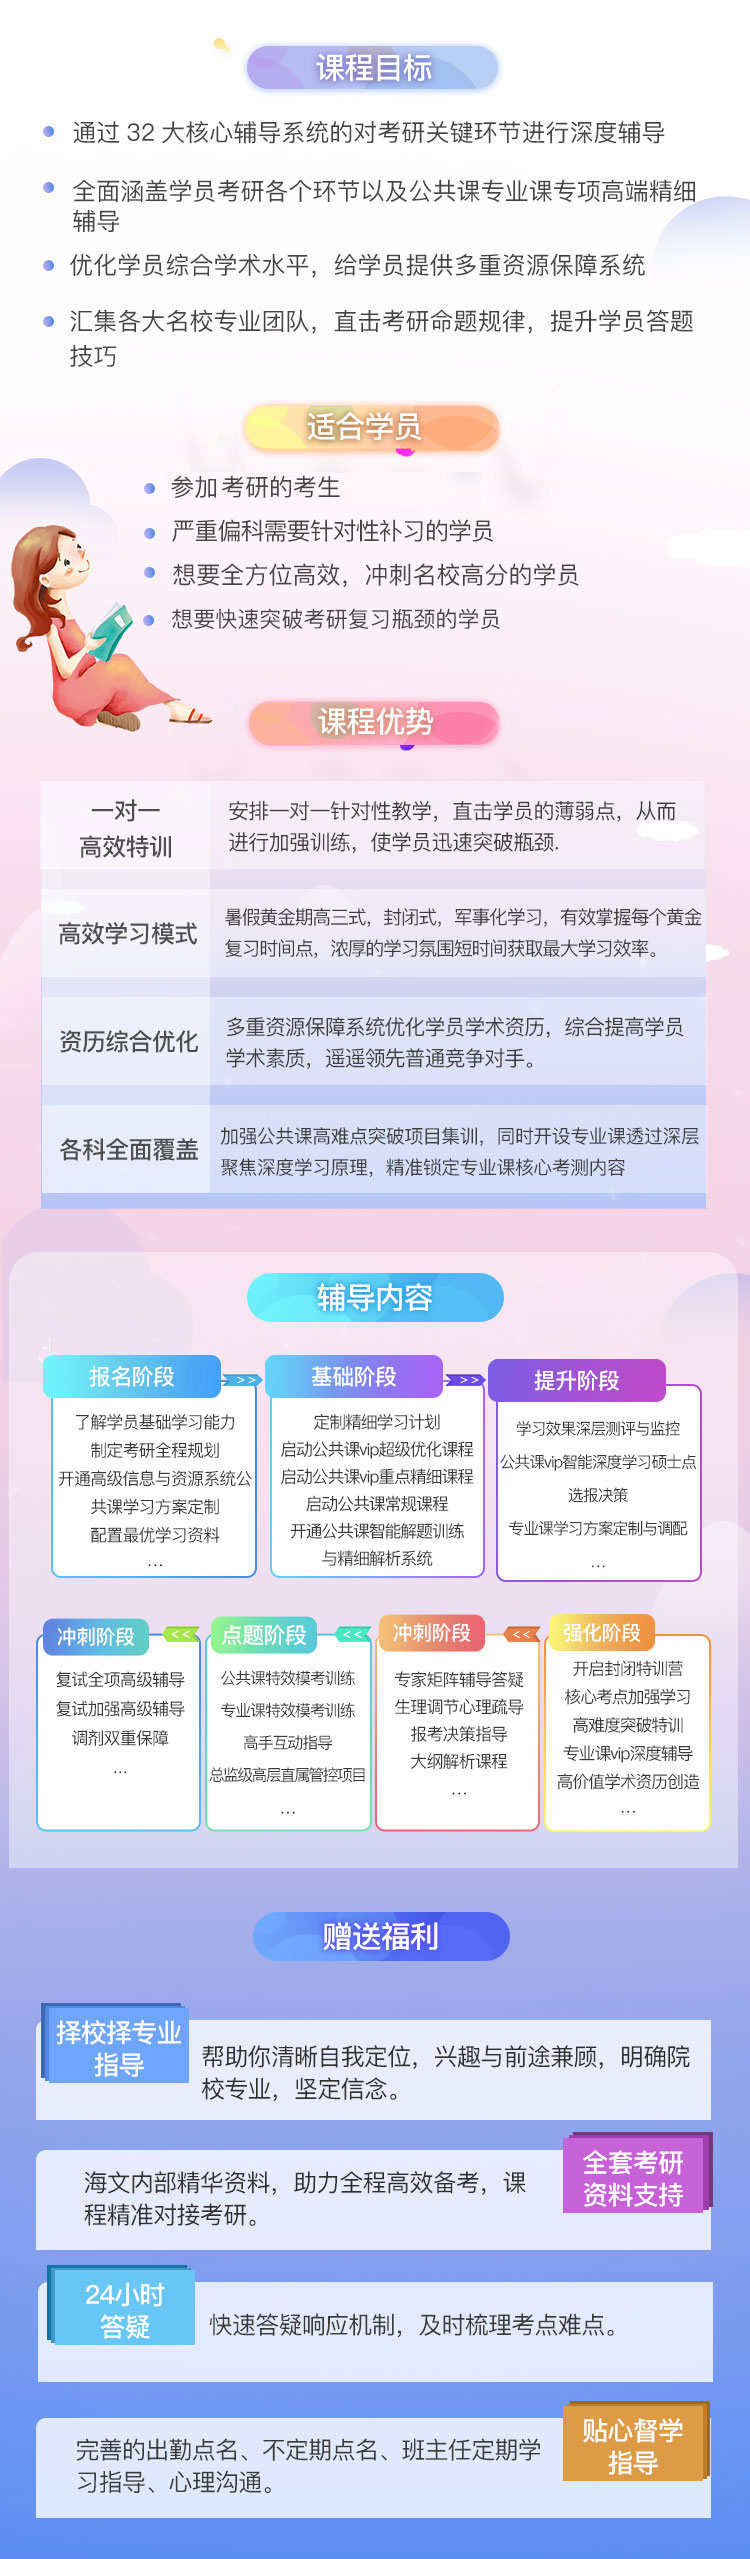 四川医学考研超级钻石卡课程（课程图示）